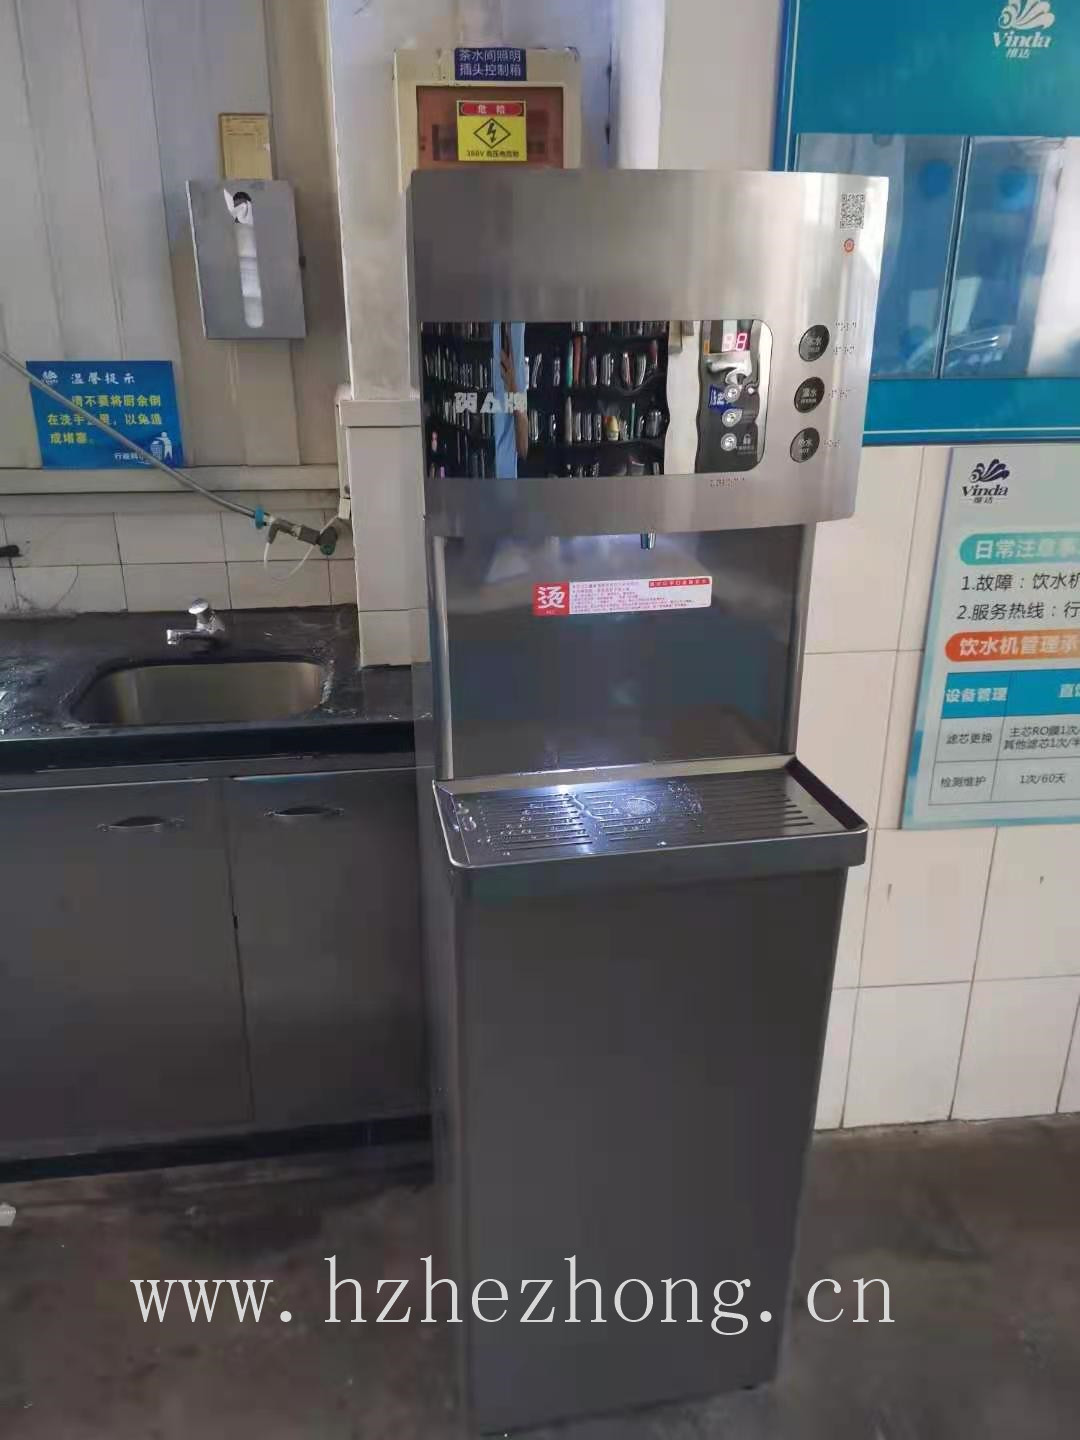 贺众牌饮水机官方网站  维达纸业（中国）有限公司使用贺众牌饮水机